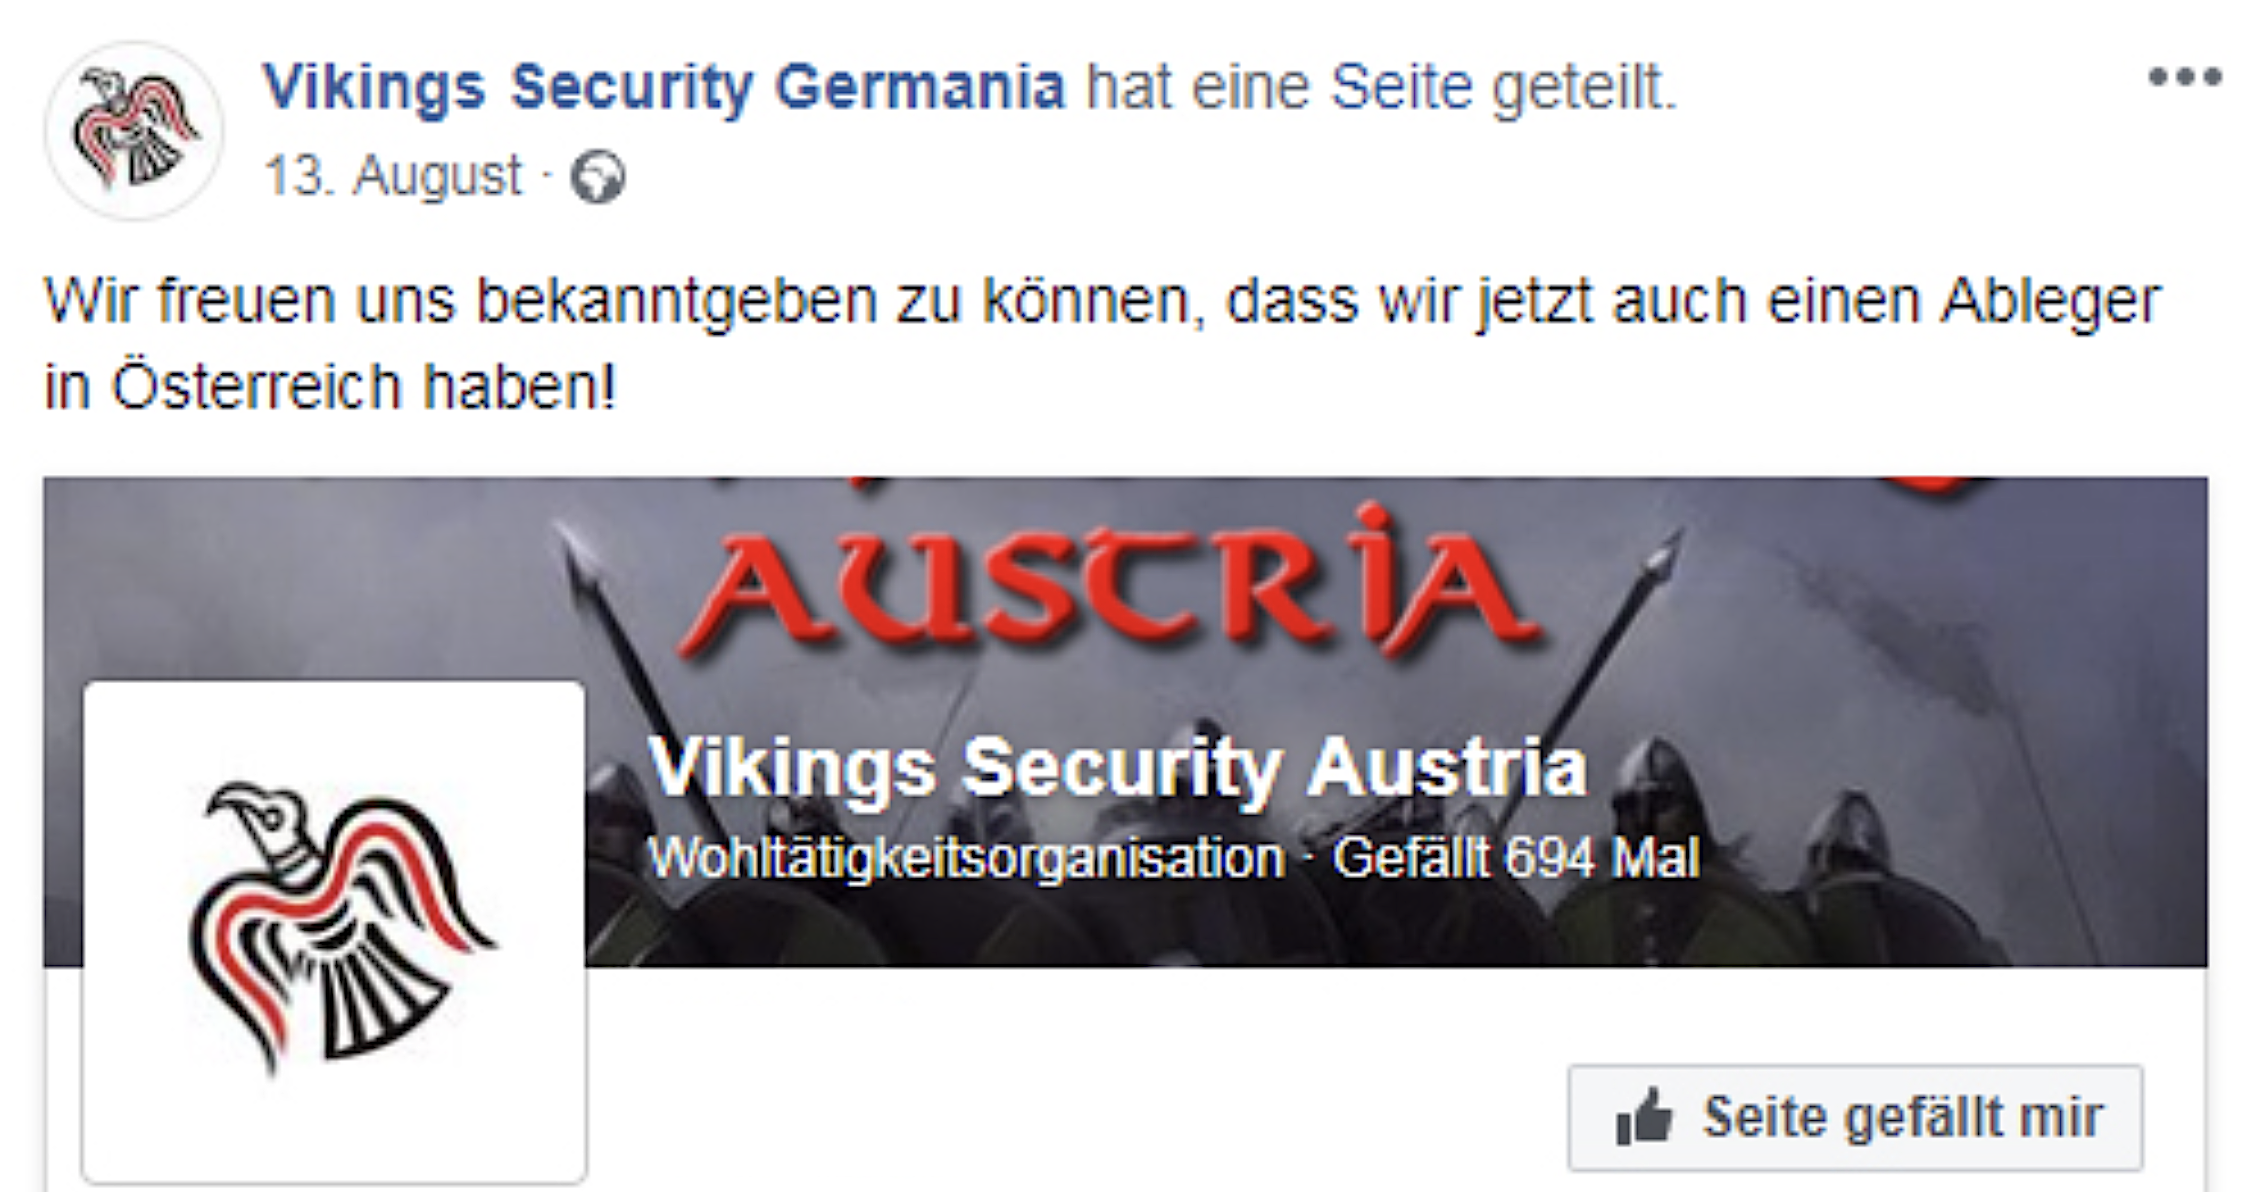 Vikings Security Germania gibt die Gründung eines Ablegers in Österreich bekannt